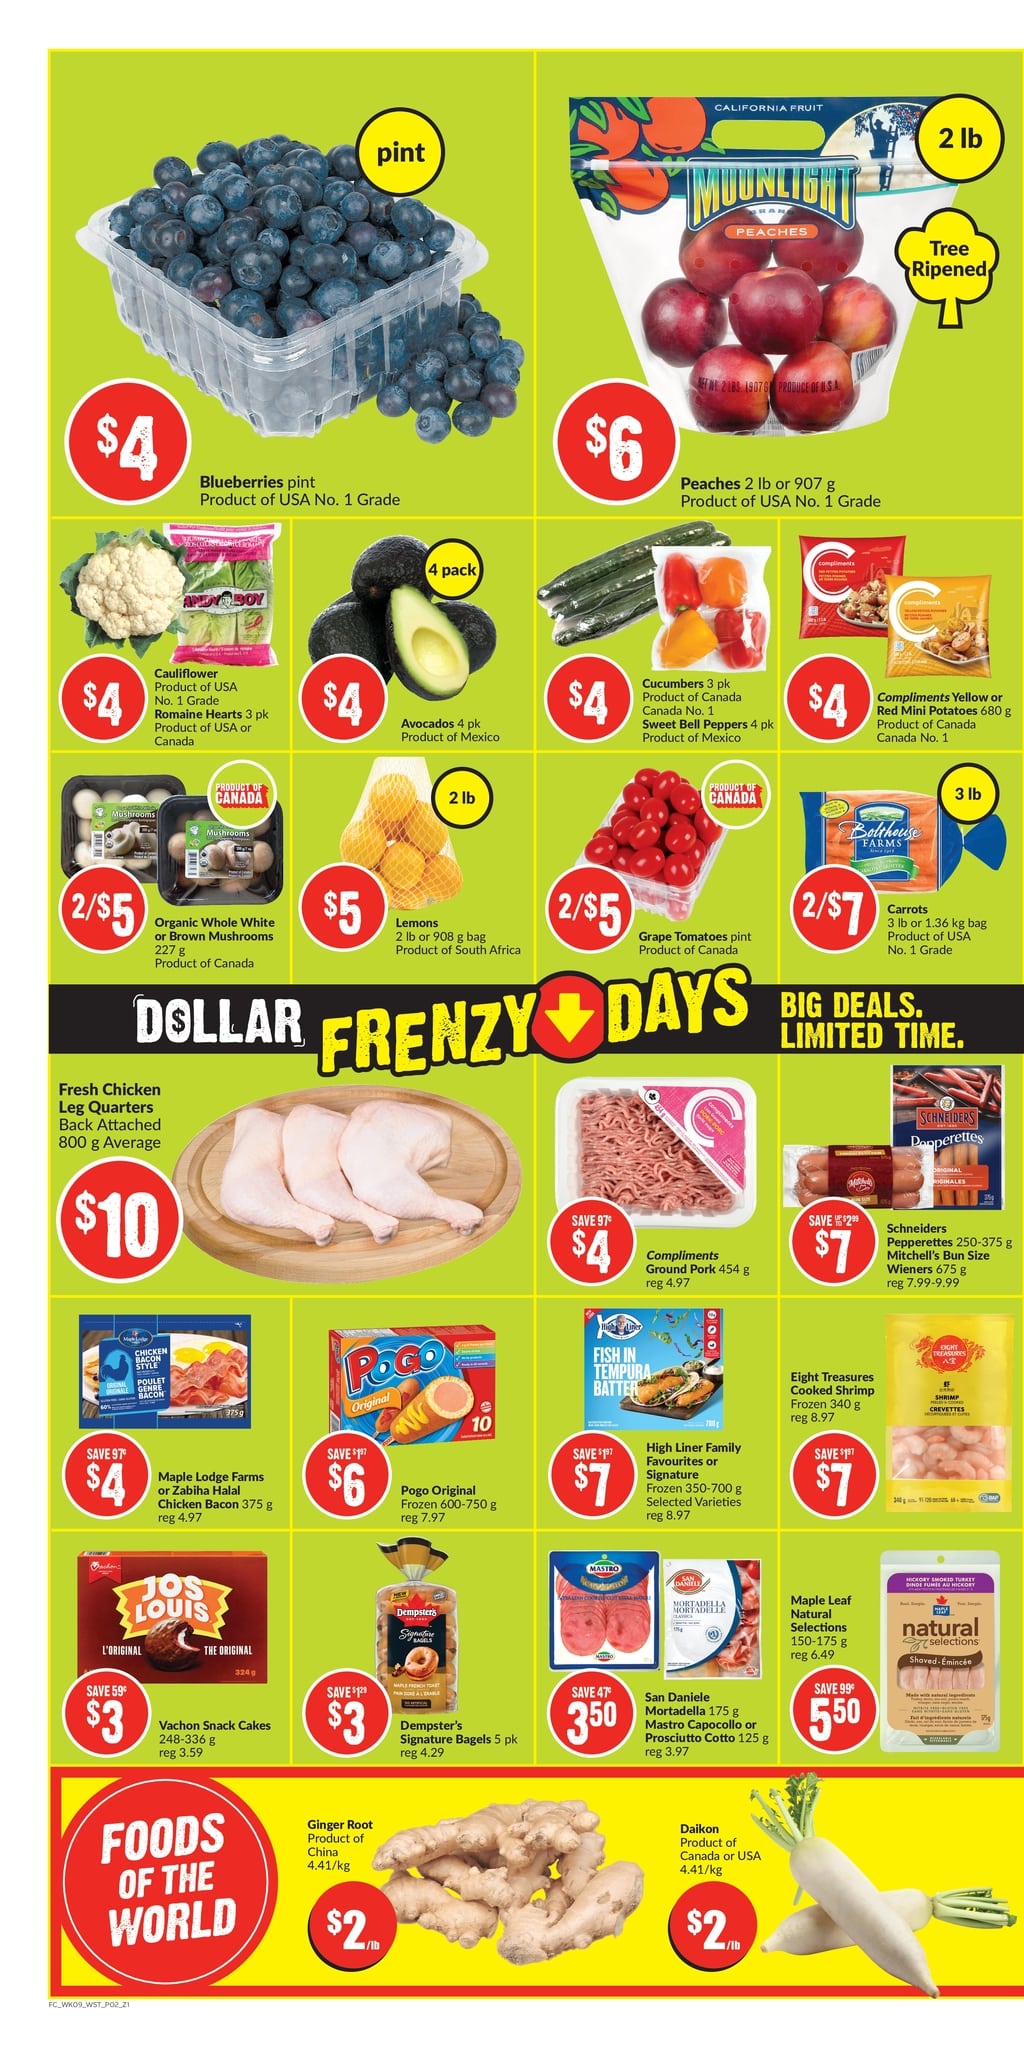 FreshCo Alberta - Weekly Flyer Specials - Page 2